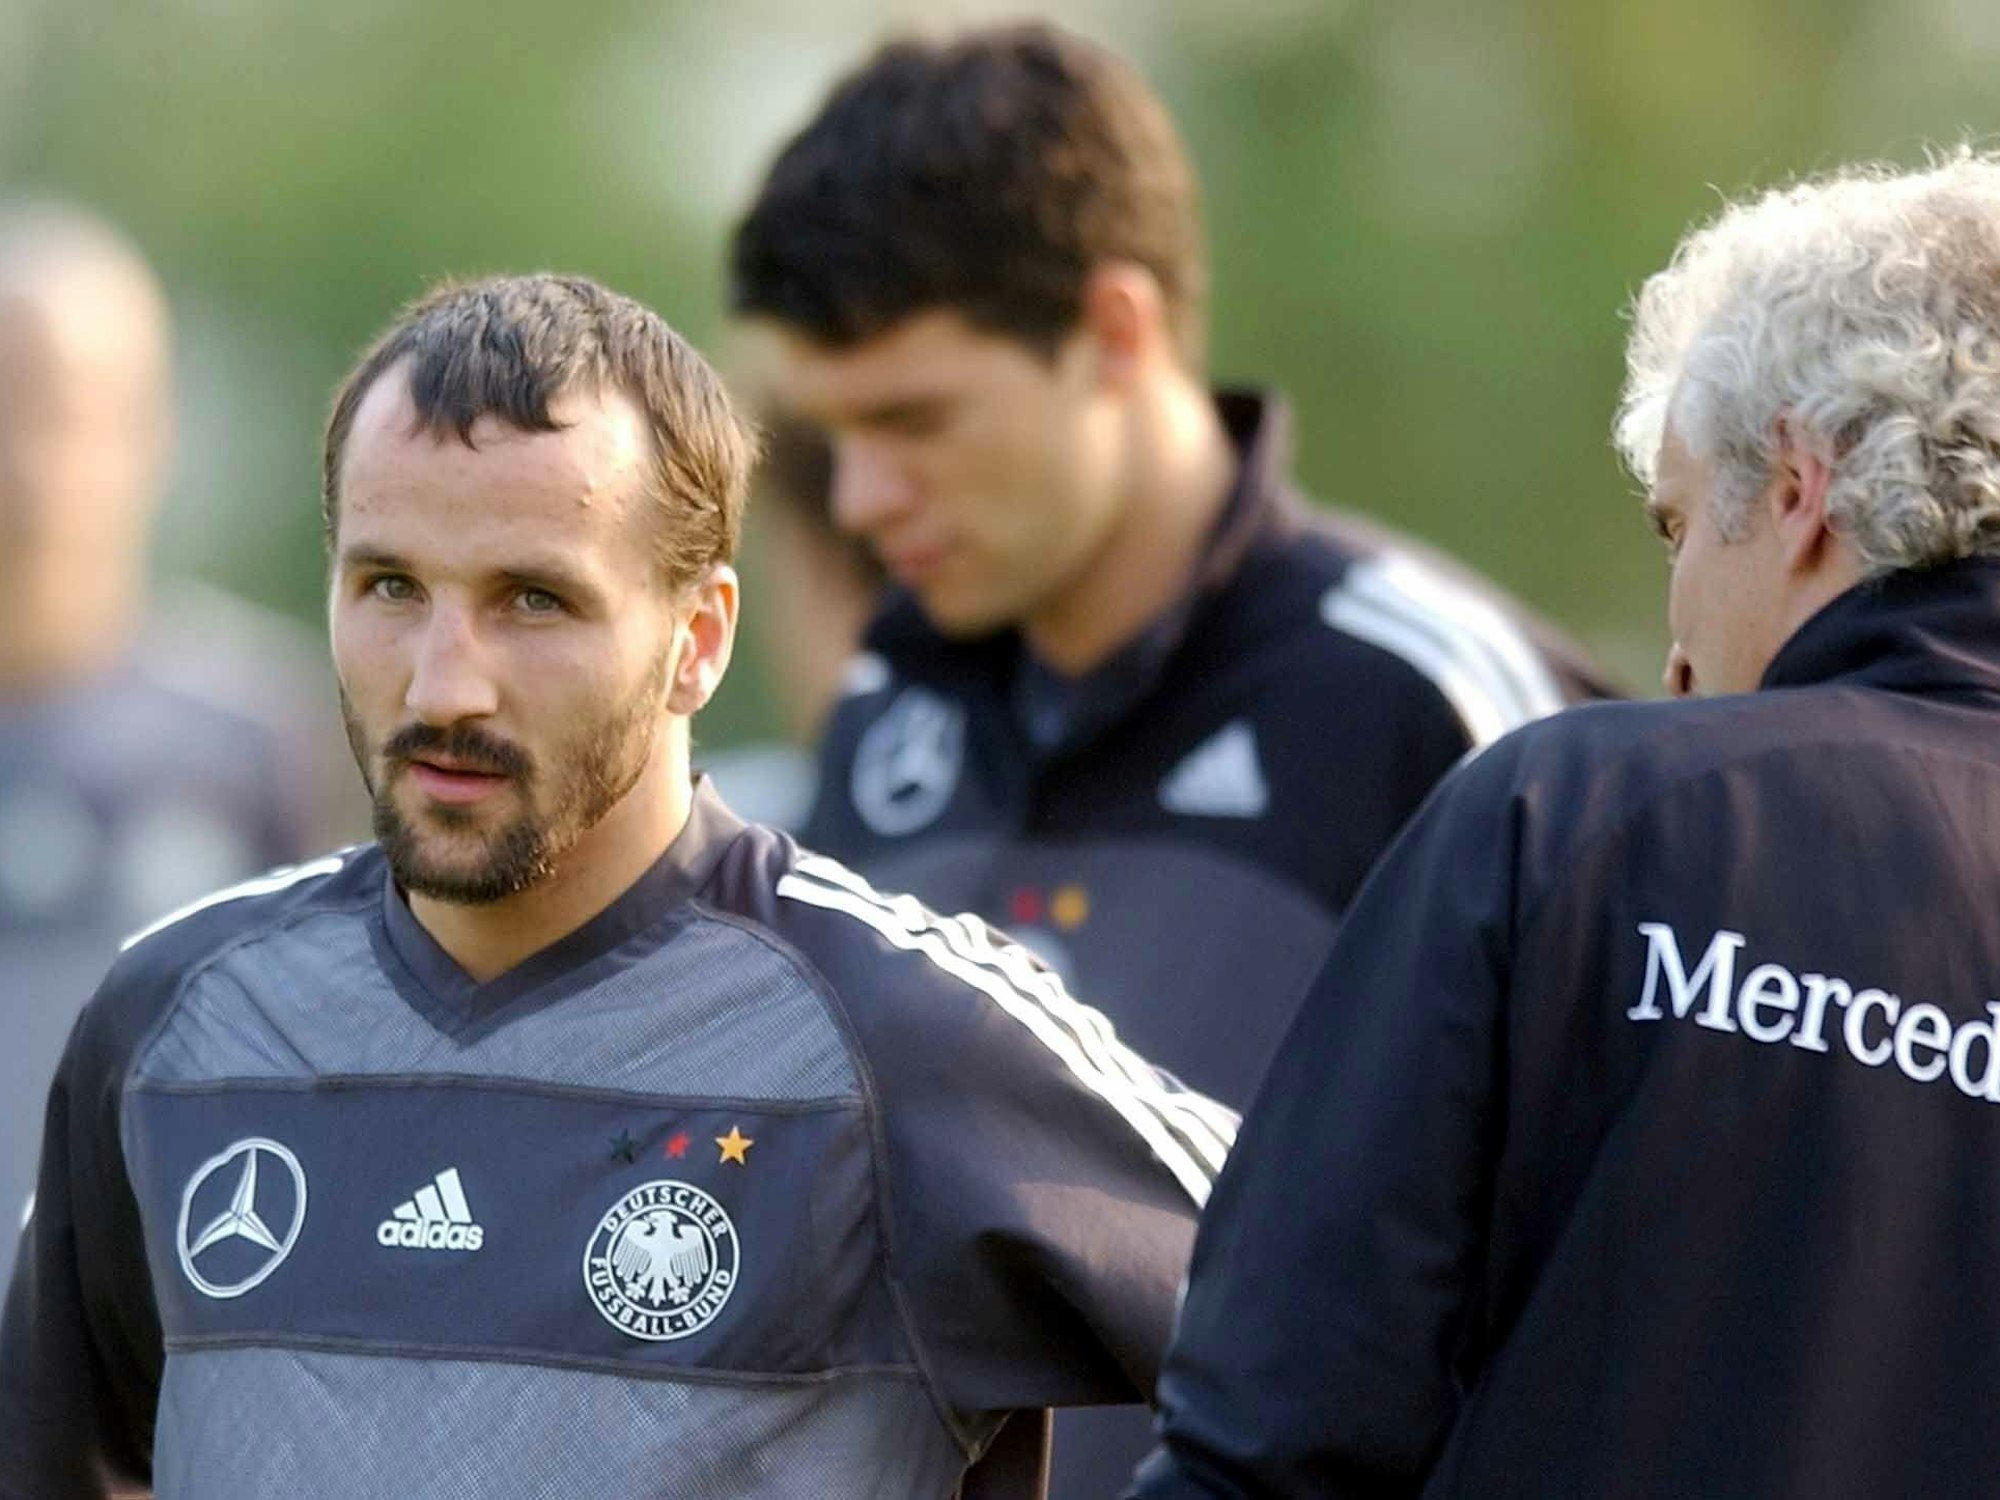 DFB-Teamchef Rudi Völler (r.) spricht während des Trainings mit Jens Jeremies, im Hintergrund Michael Ballack.